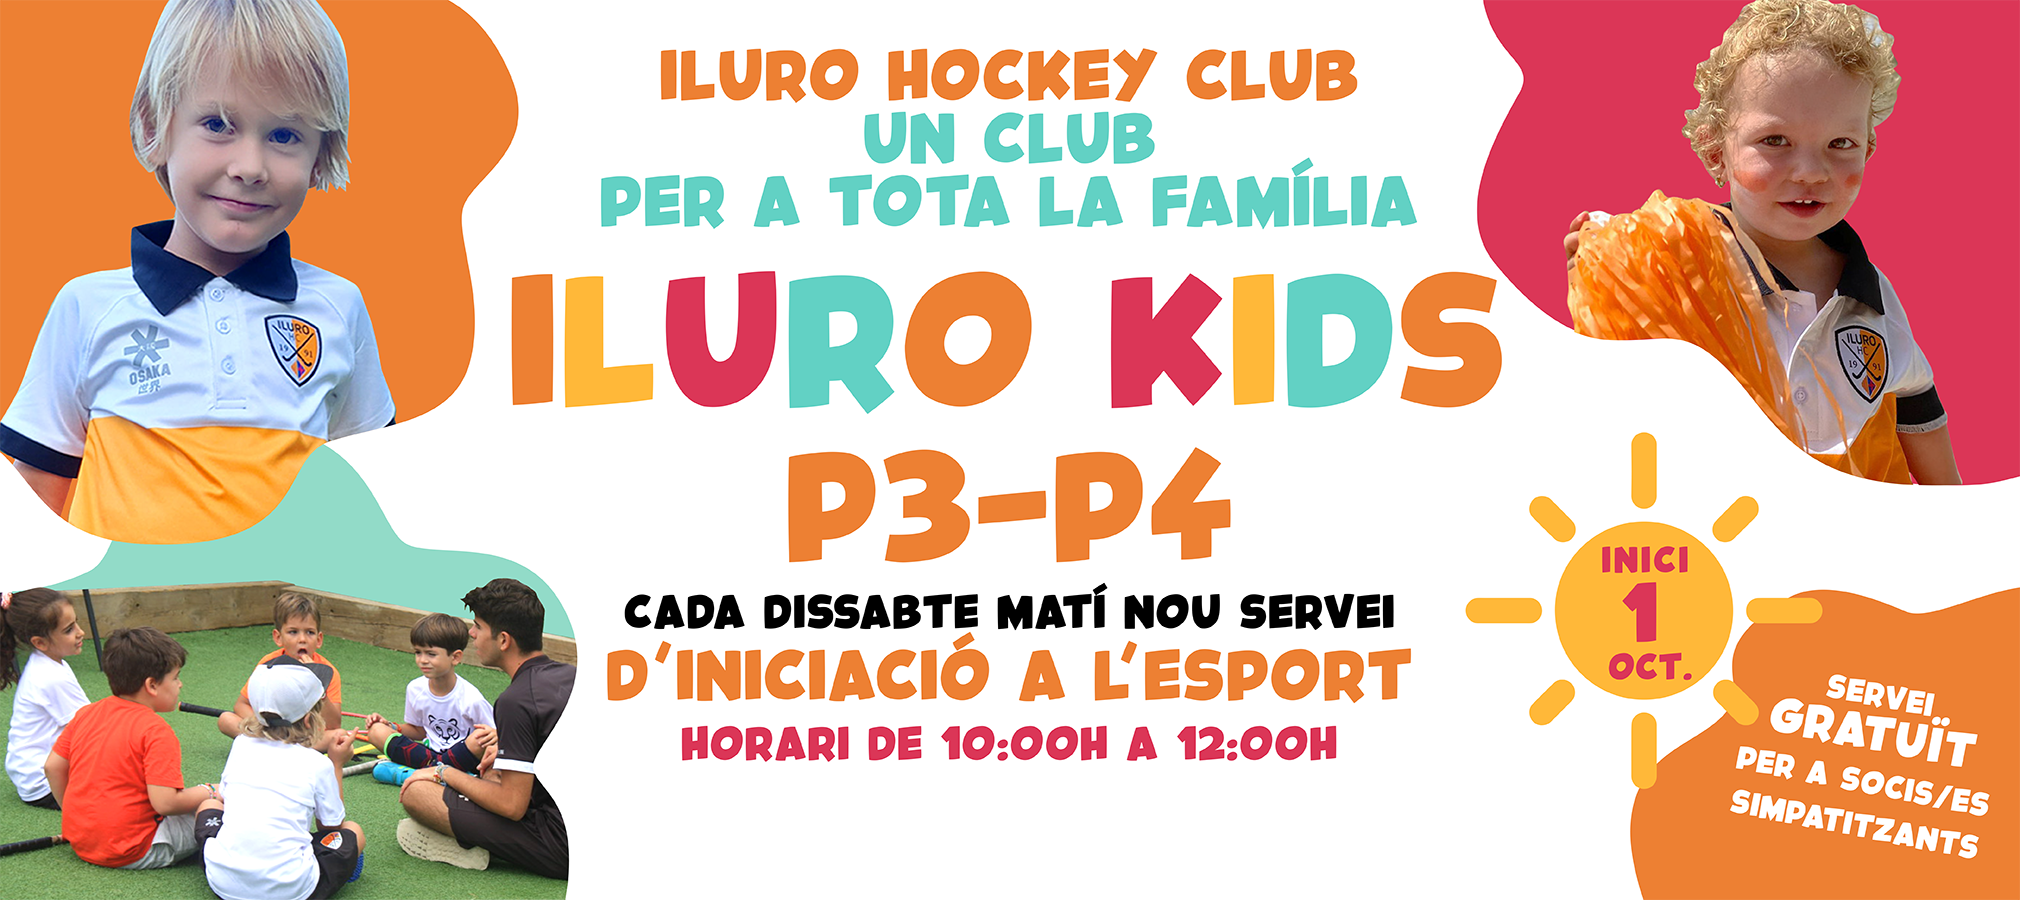 Iluro-kids-banner2020x900-2